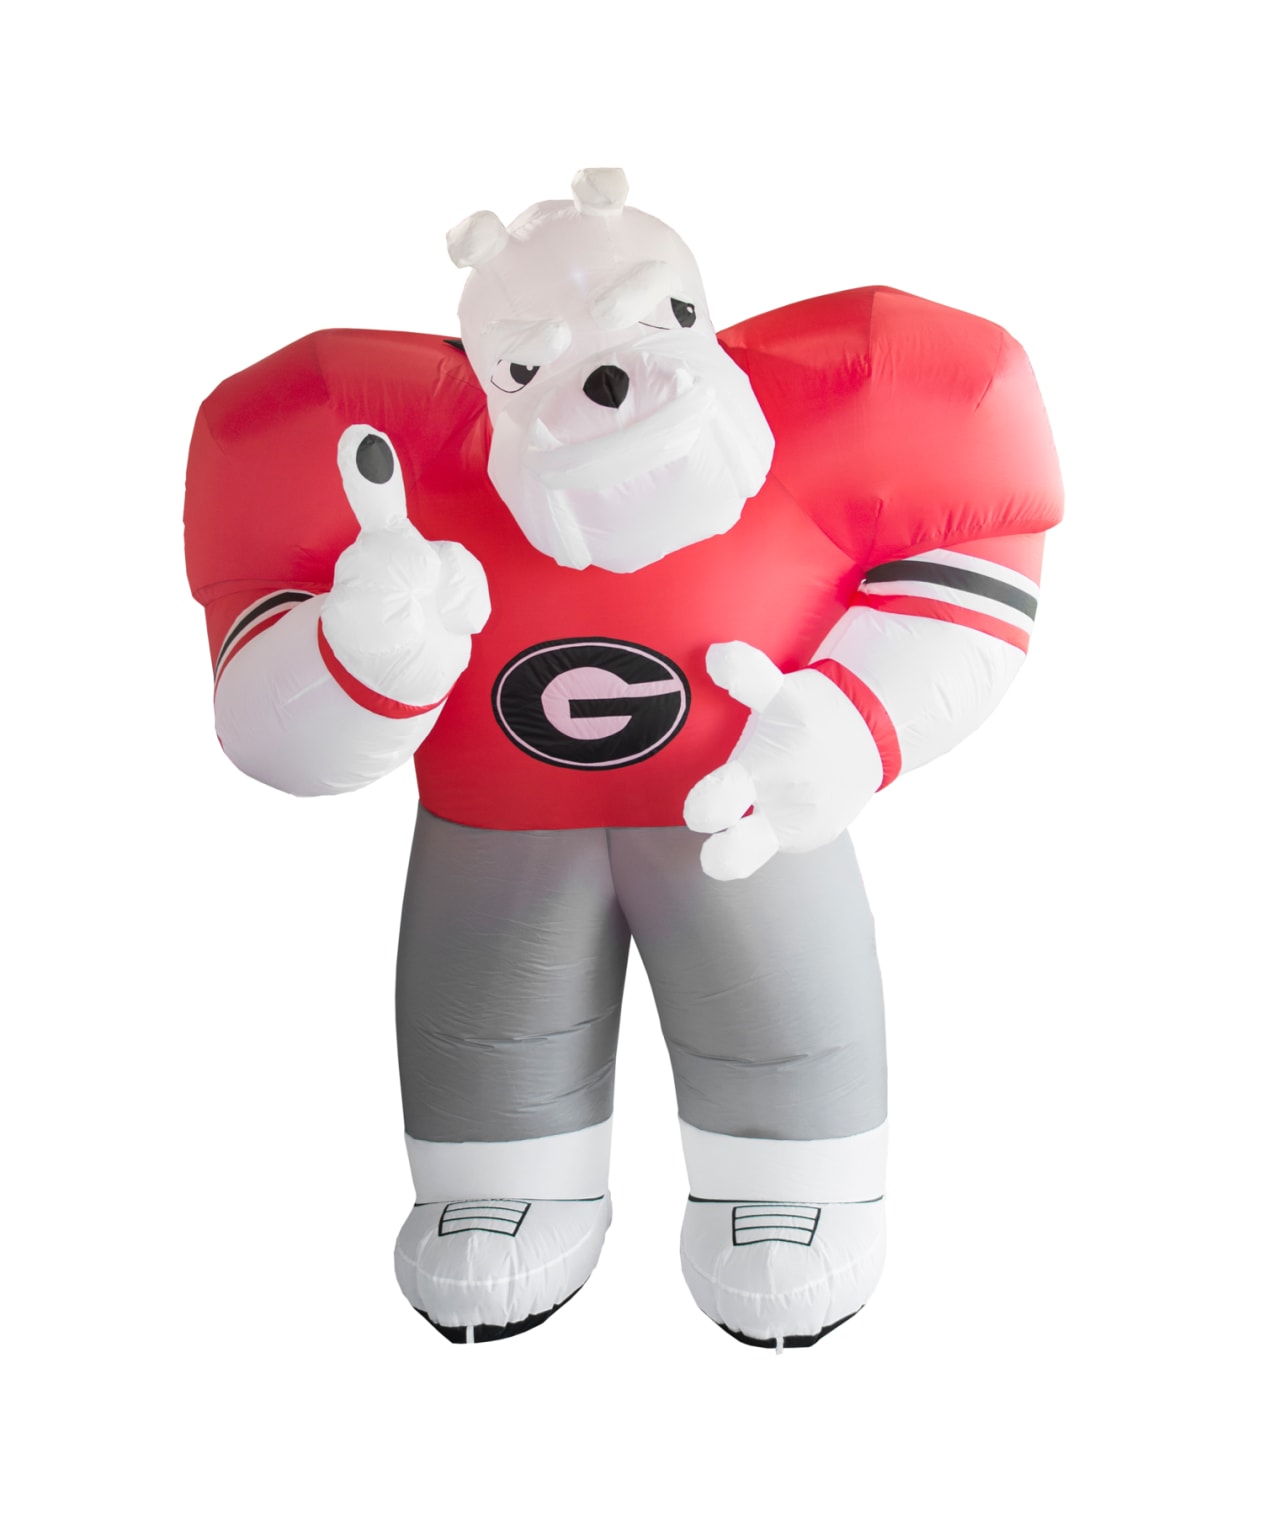 Georgia Inflatable Mascot